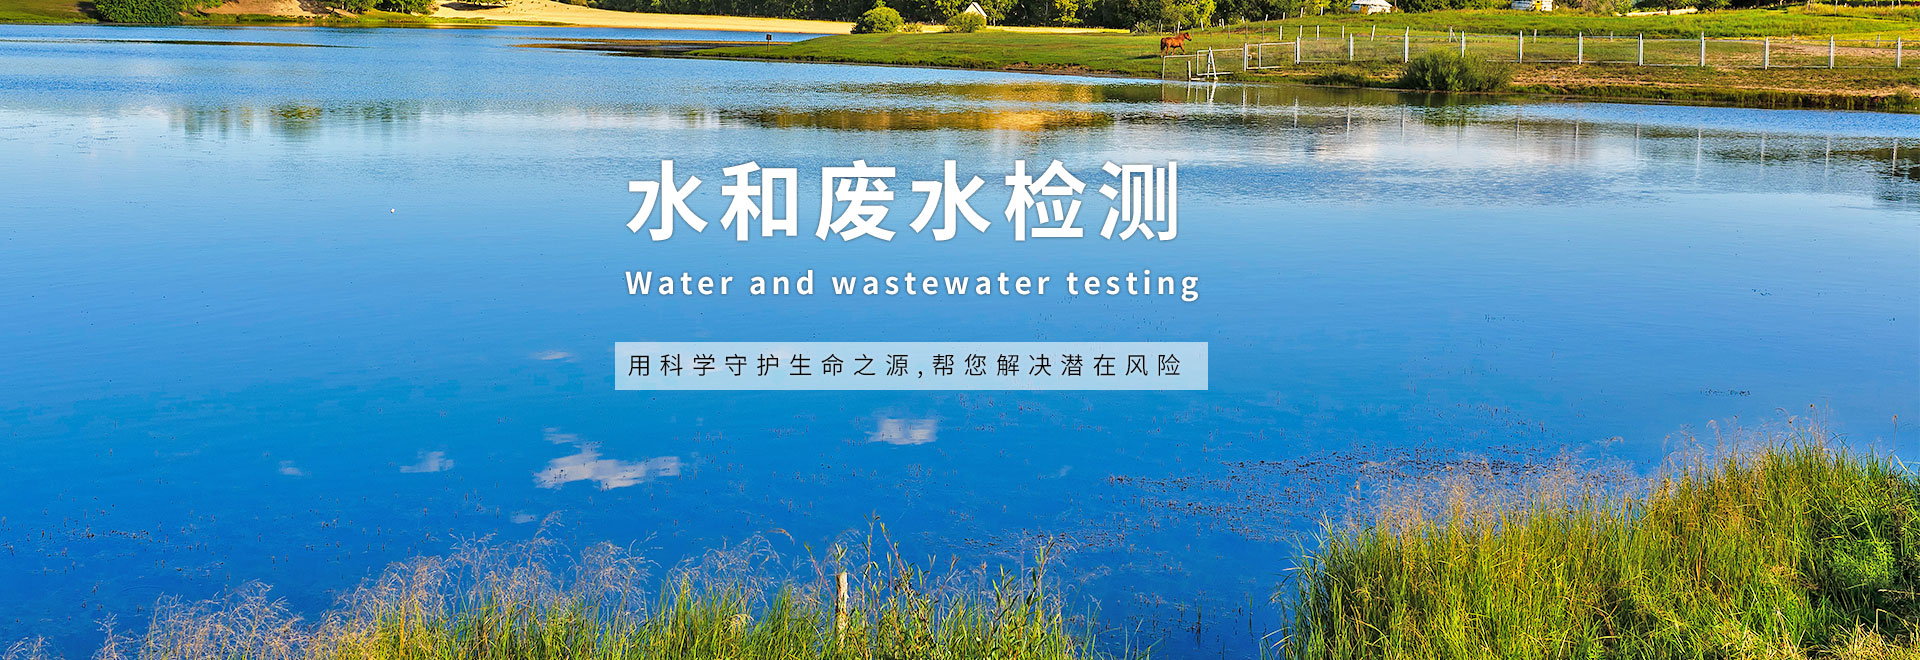 水和废水检测